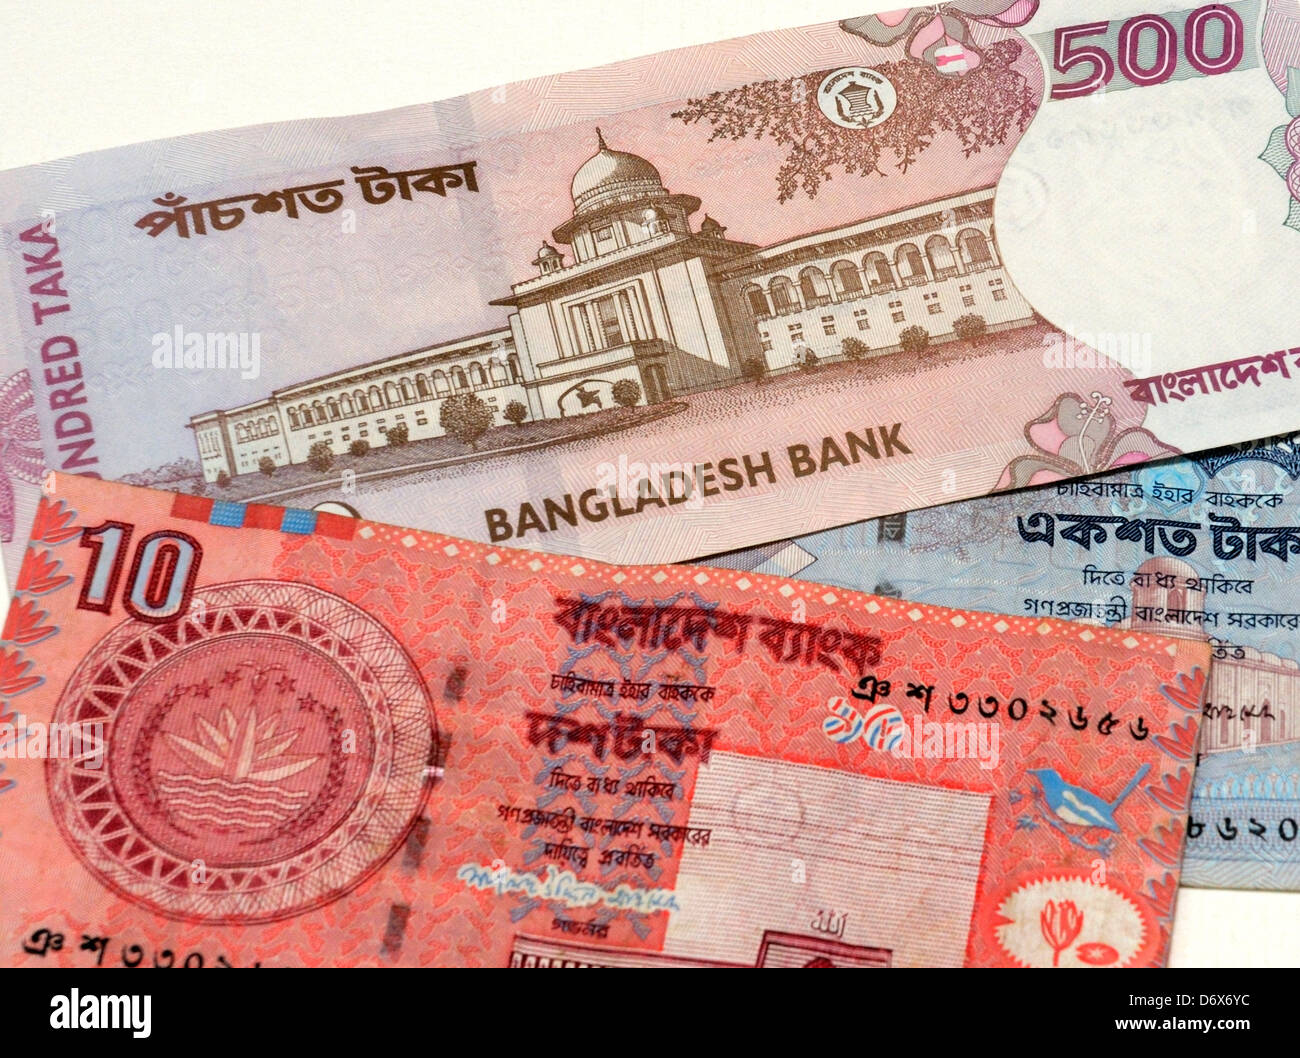 Bangladesh Bank Notes Stock Photo